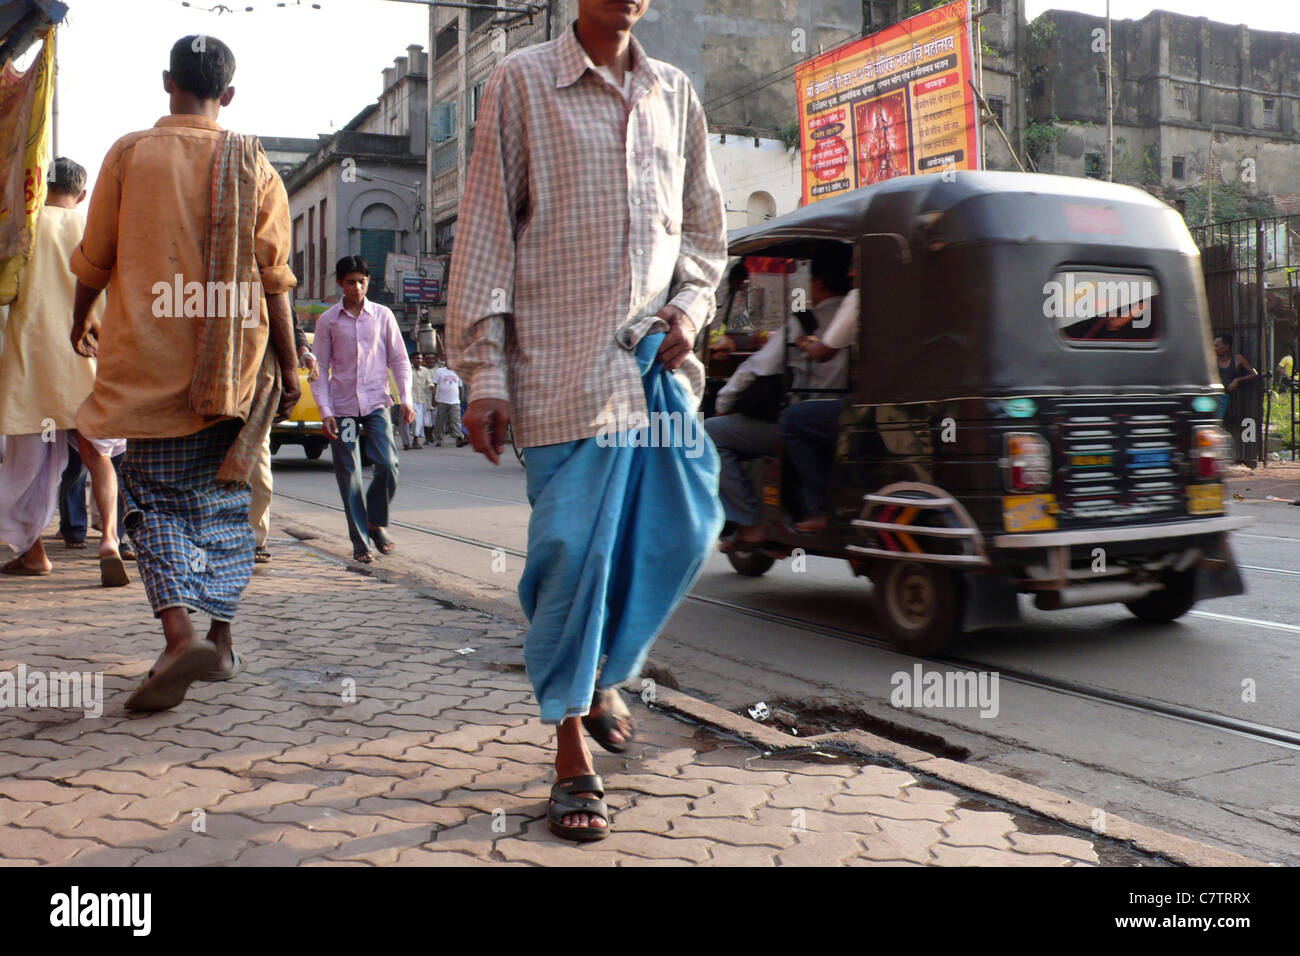 India, Calcutta, urban scene Stock Photo